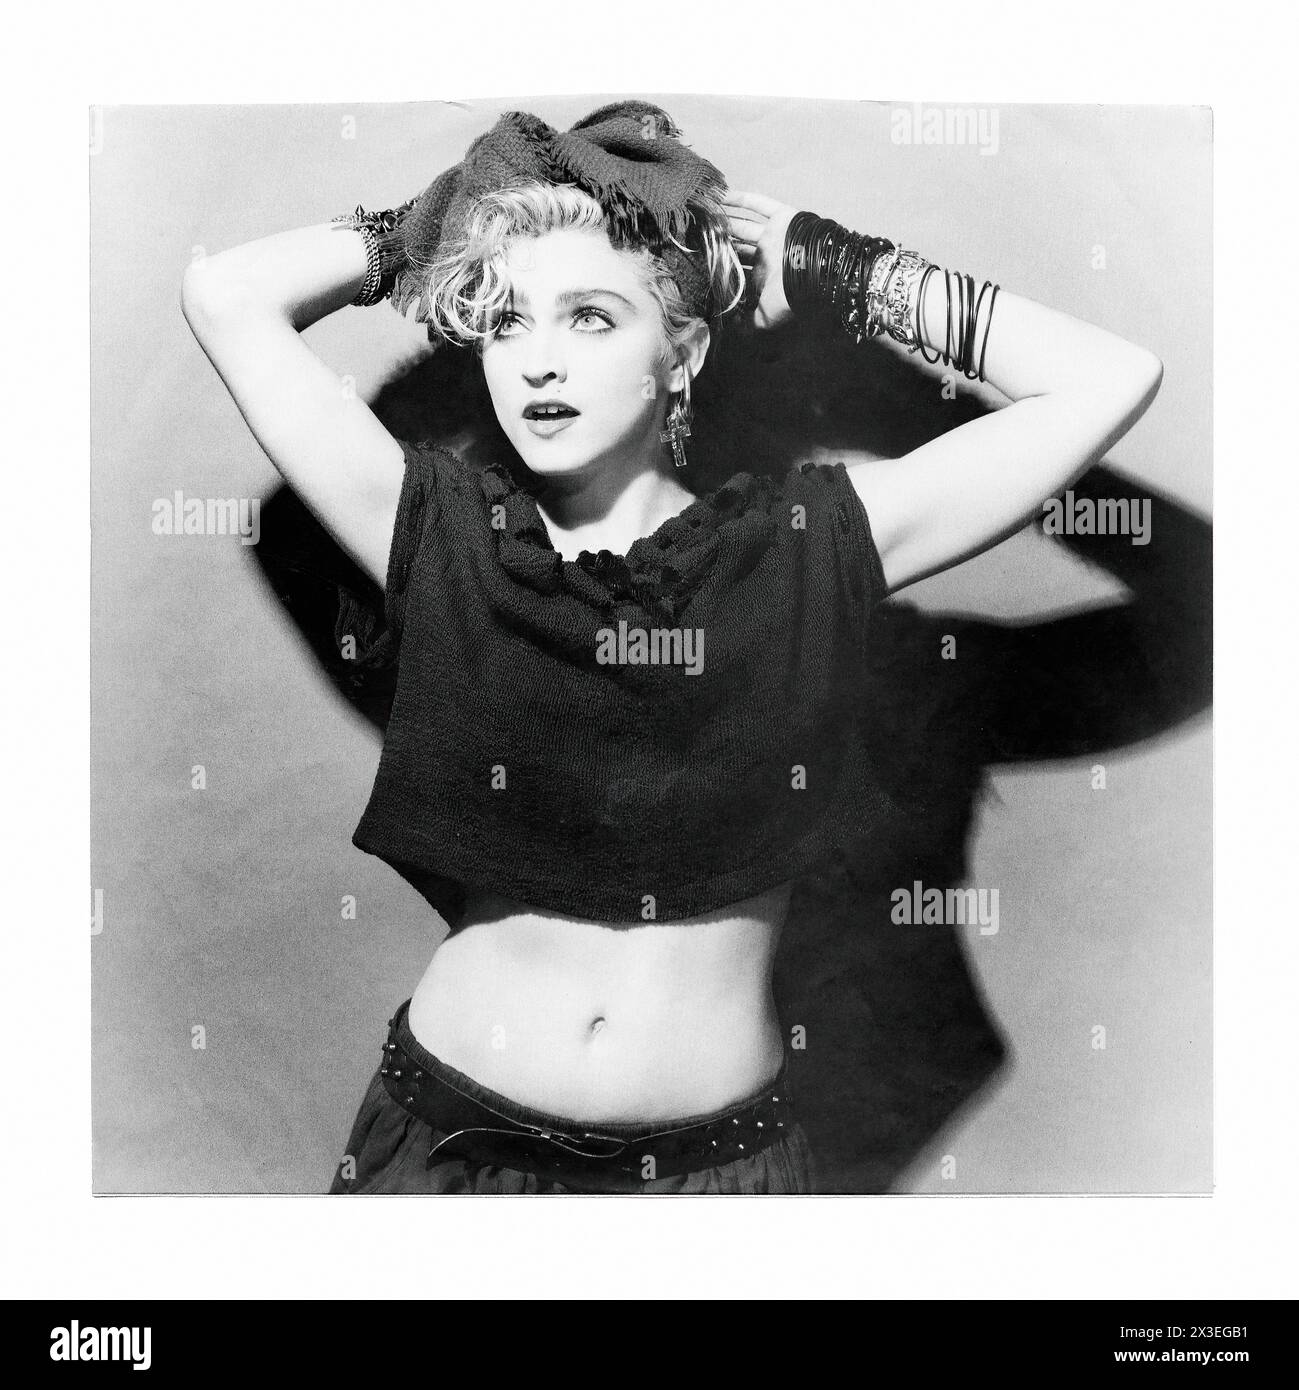 Madonna - - immagine promozionale etichetta musicale d'epoca - fotografo sconosciuto, solo per uso editoriale Foto Stock